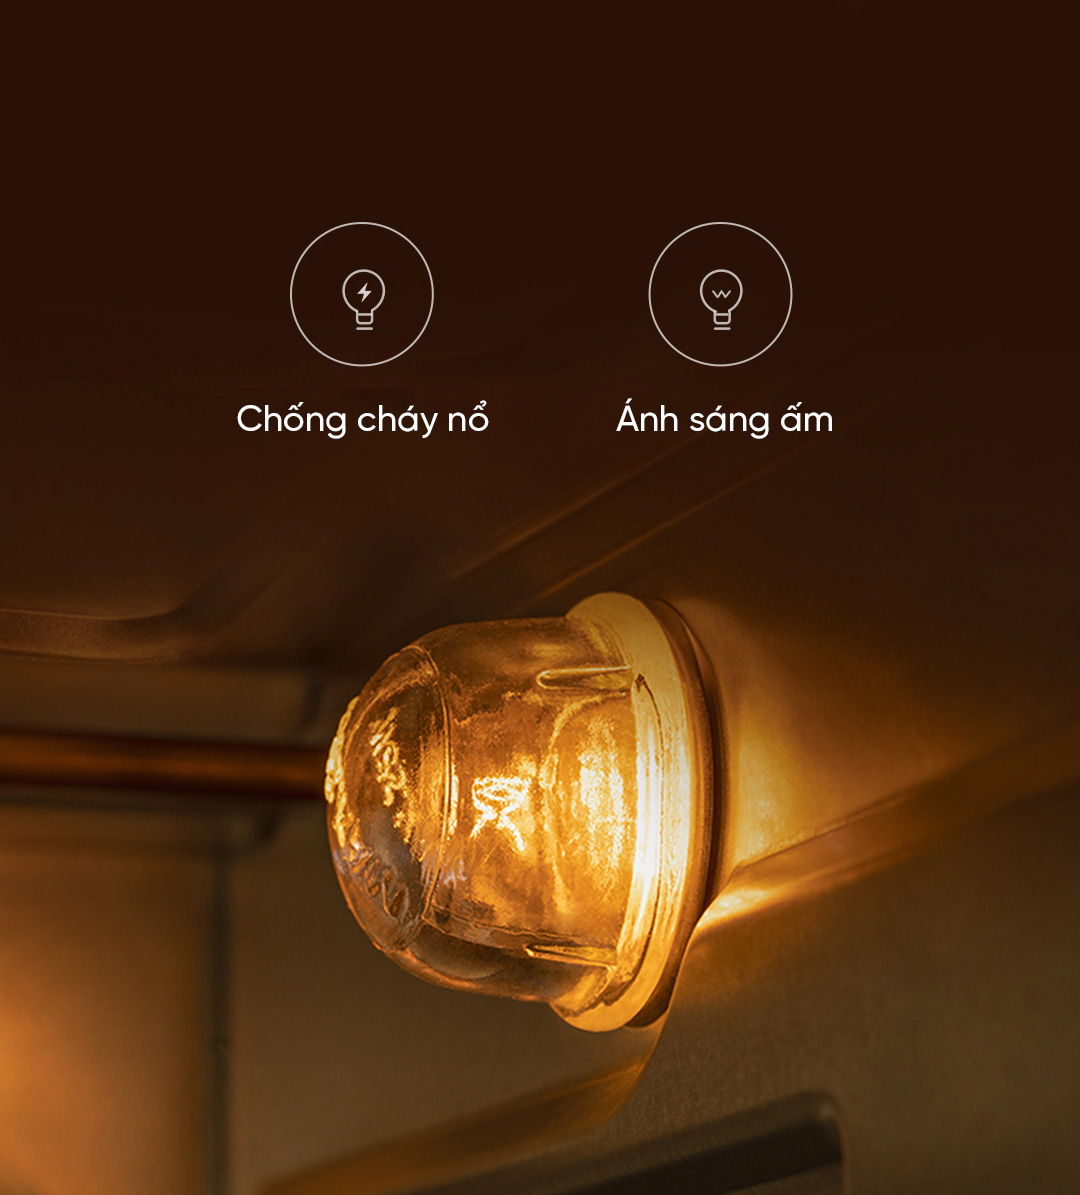 Trang bị đèn chống cháy nổ, ánh sáng đèn có công suất 25W. Bạn sẽ dễ dàng quan sát được sự thay đổi của thực phẩm trong khi nướng